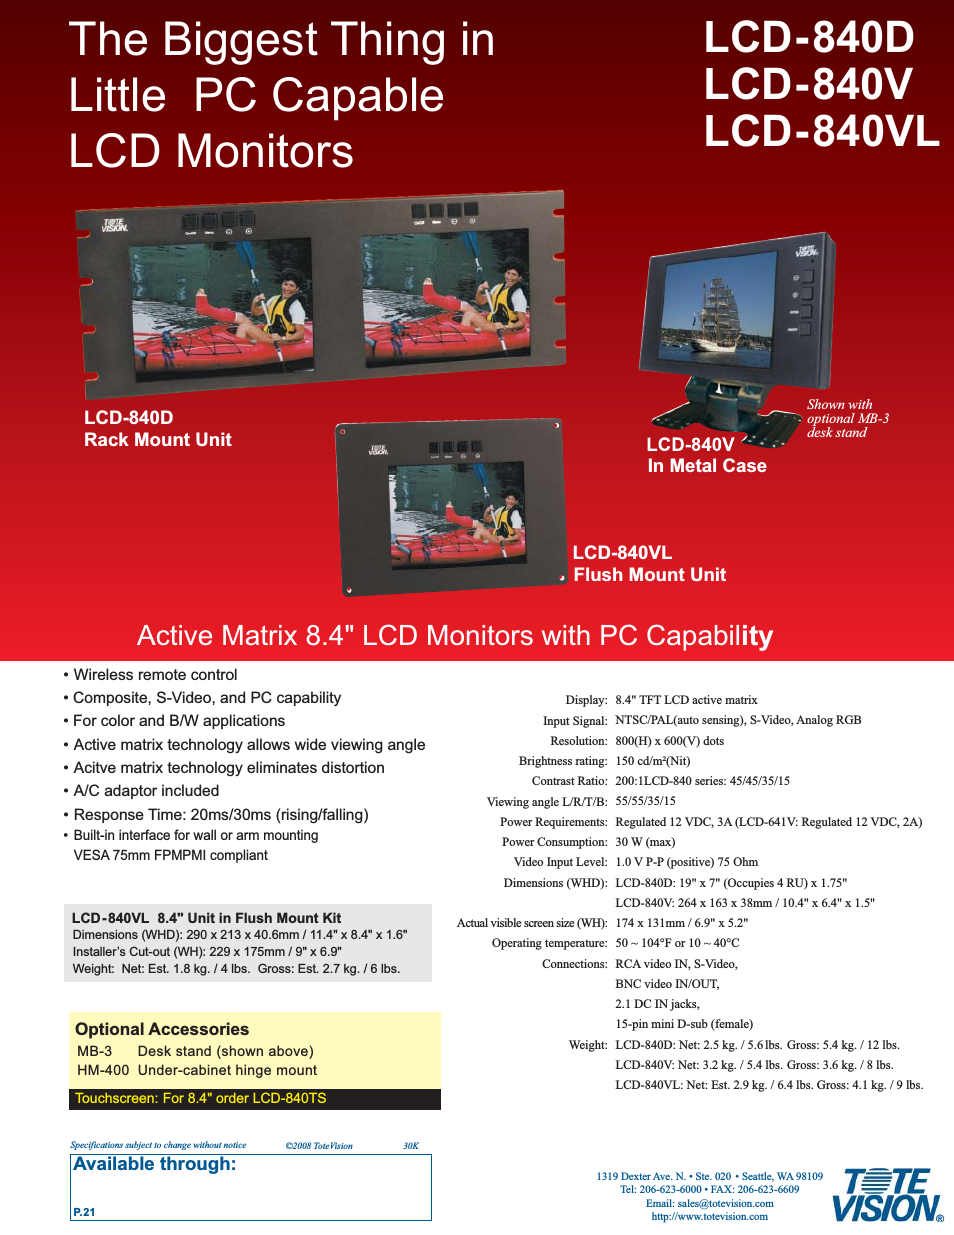 LCD-840V